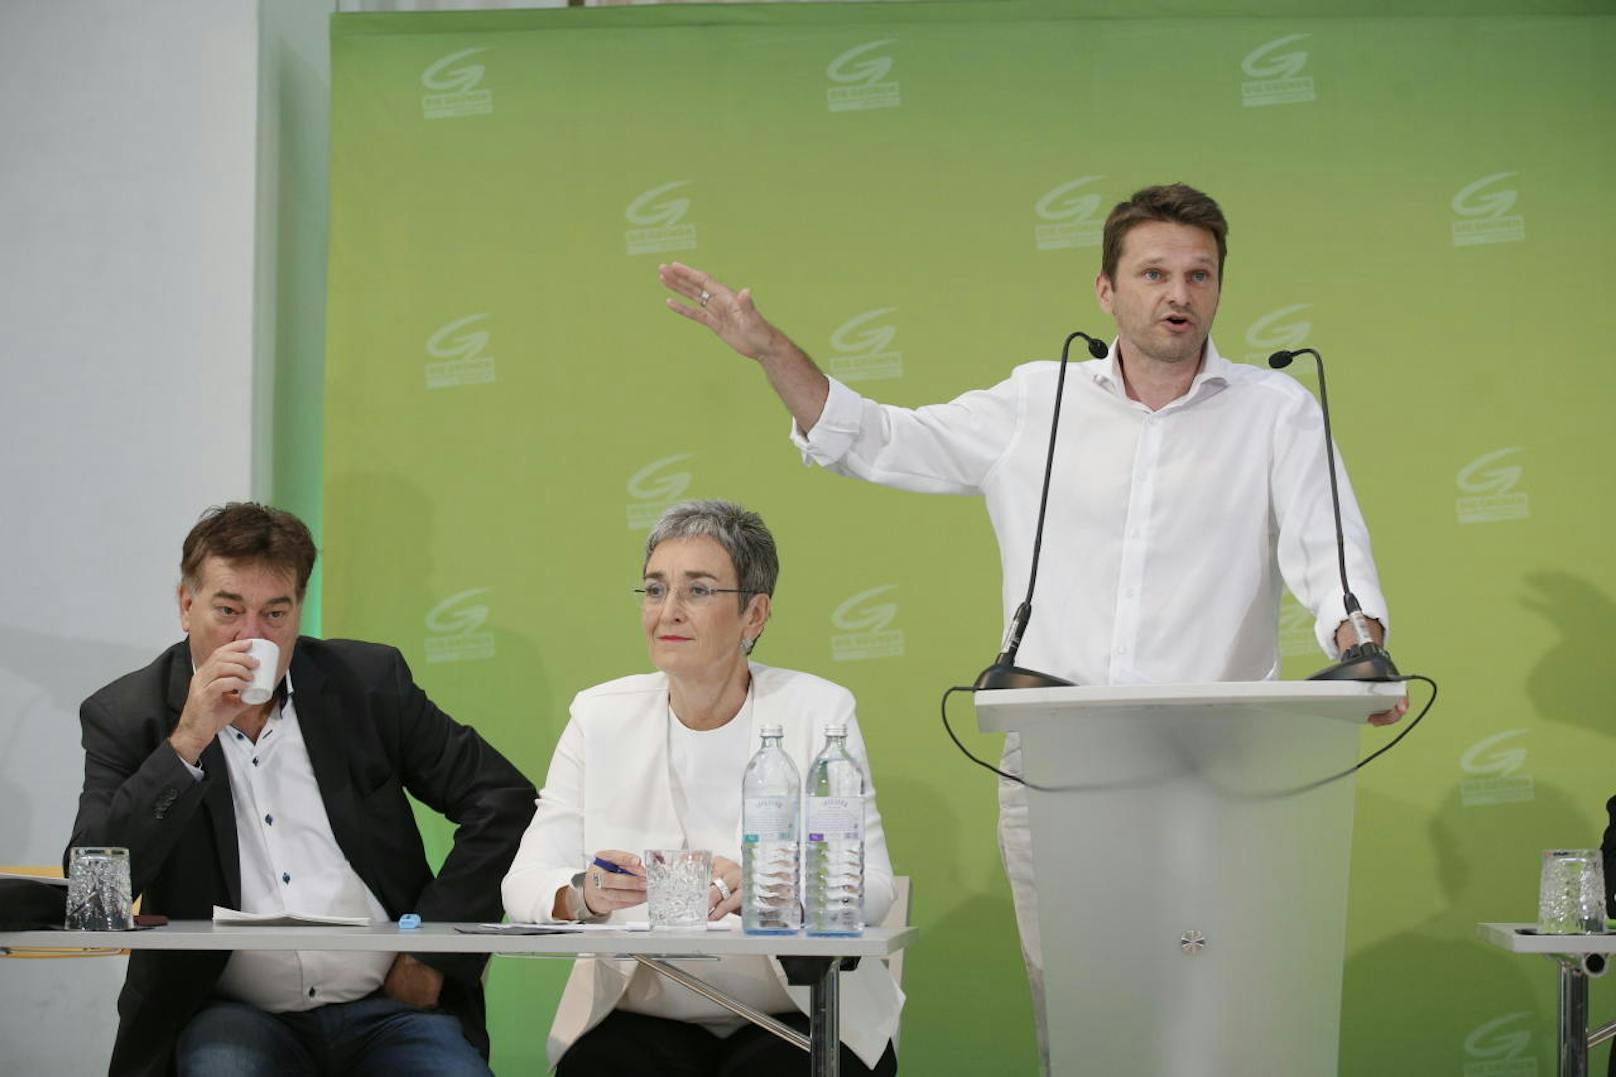 Die Grünen Werner Kogler, Ulrike Lunacek und Albert Steinhauser (von links) beim erweiterten Bundesvorstand am 18. Juli 2017 in Wien